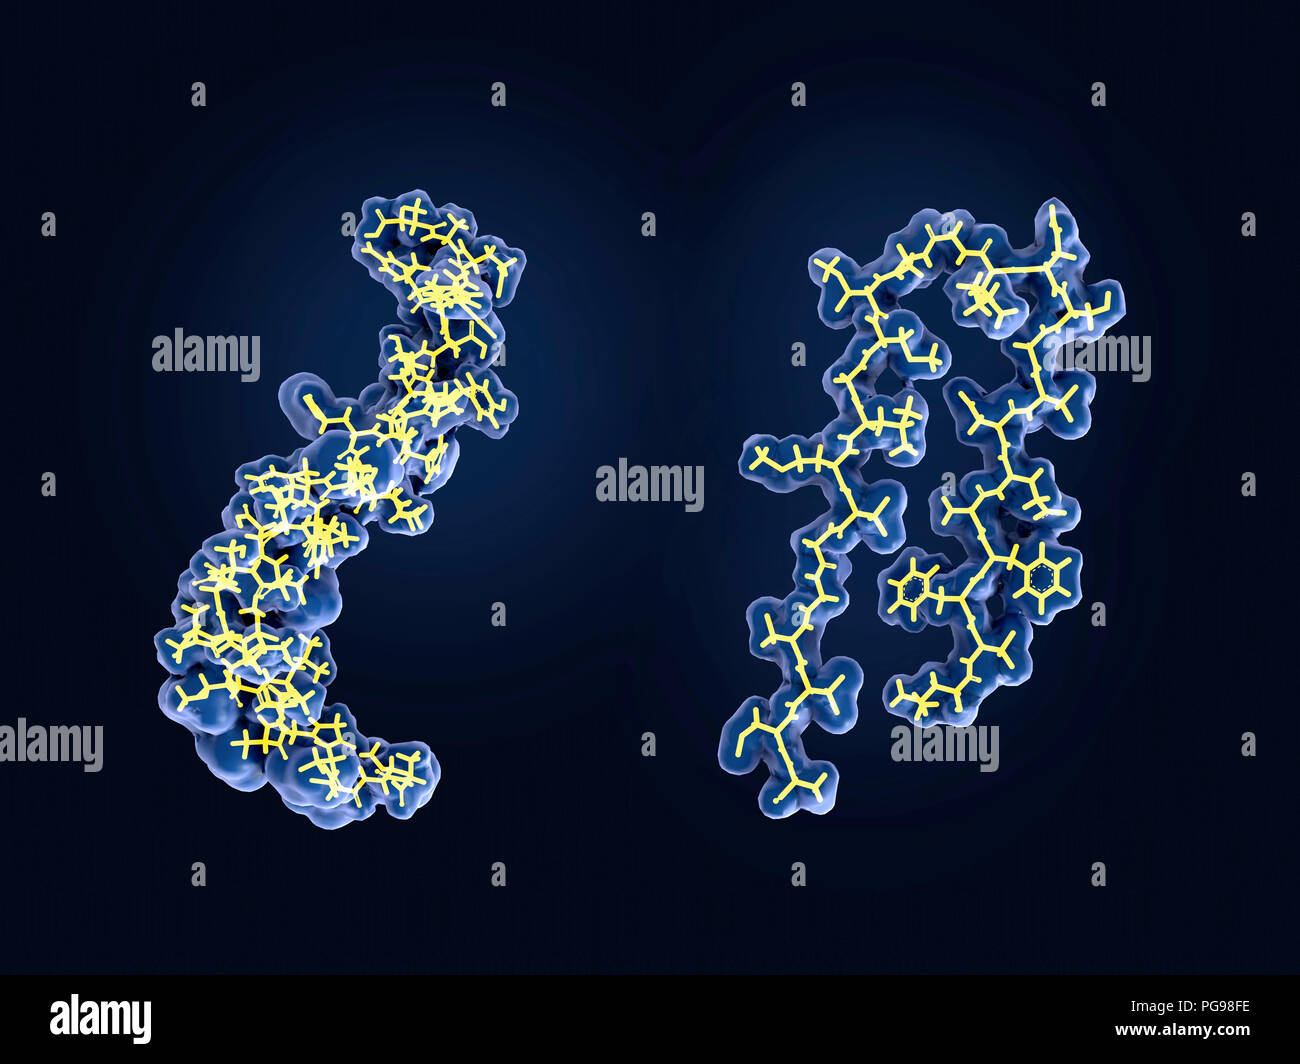 La proteina amiloide cambiamenti strutturali, modelli molecolari. Dopo essere sottoposto a clivaggio mediante la gamma e beta secretasi, il beta-peptide amiloide, che ha circa 40 residui di amminoacido, lascia la membrana (a destra), cambia forma e si aggrega in lunghe fibrille (sinistra). Queste fibrille formare dense le placche su cellule nervose, una caratteristica del morbo di Alzheimer. Foto Stock